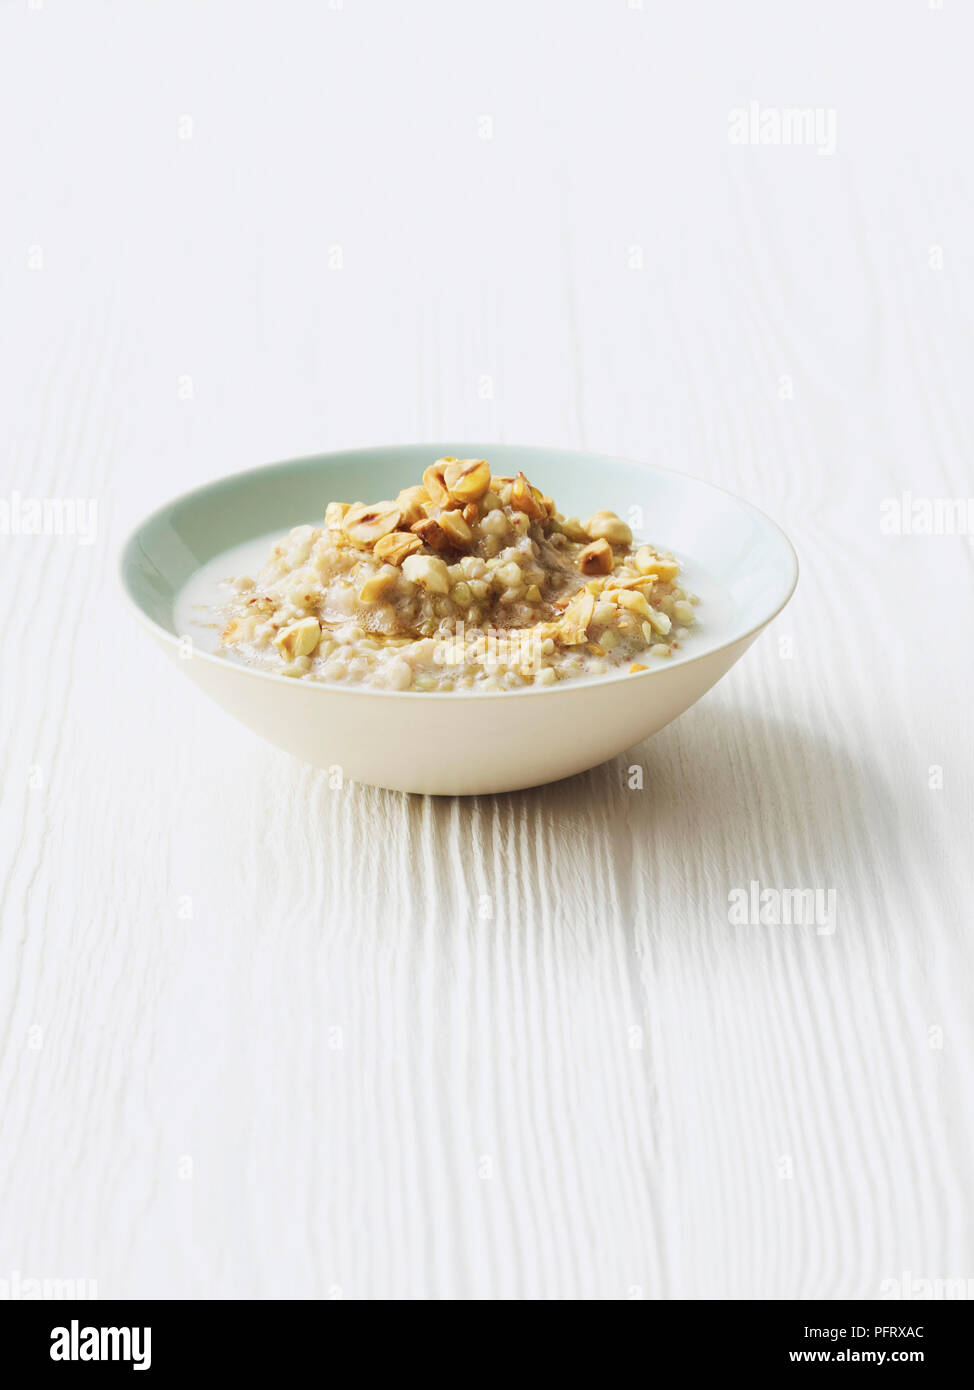 Buckwheat porridge with maple syrup and toasted hazelnuts Stock Photo